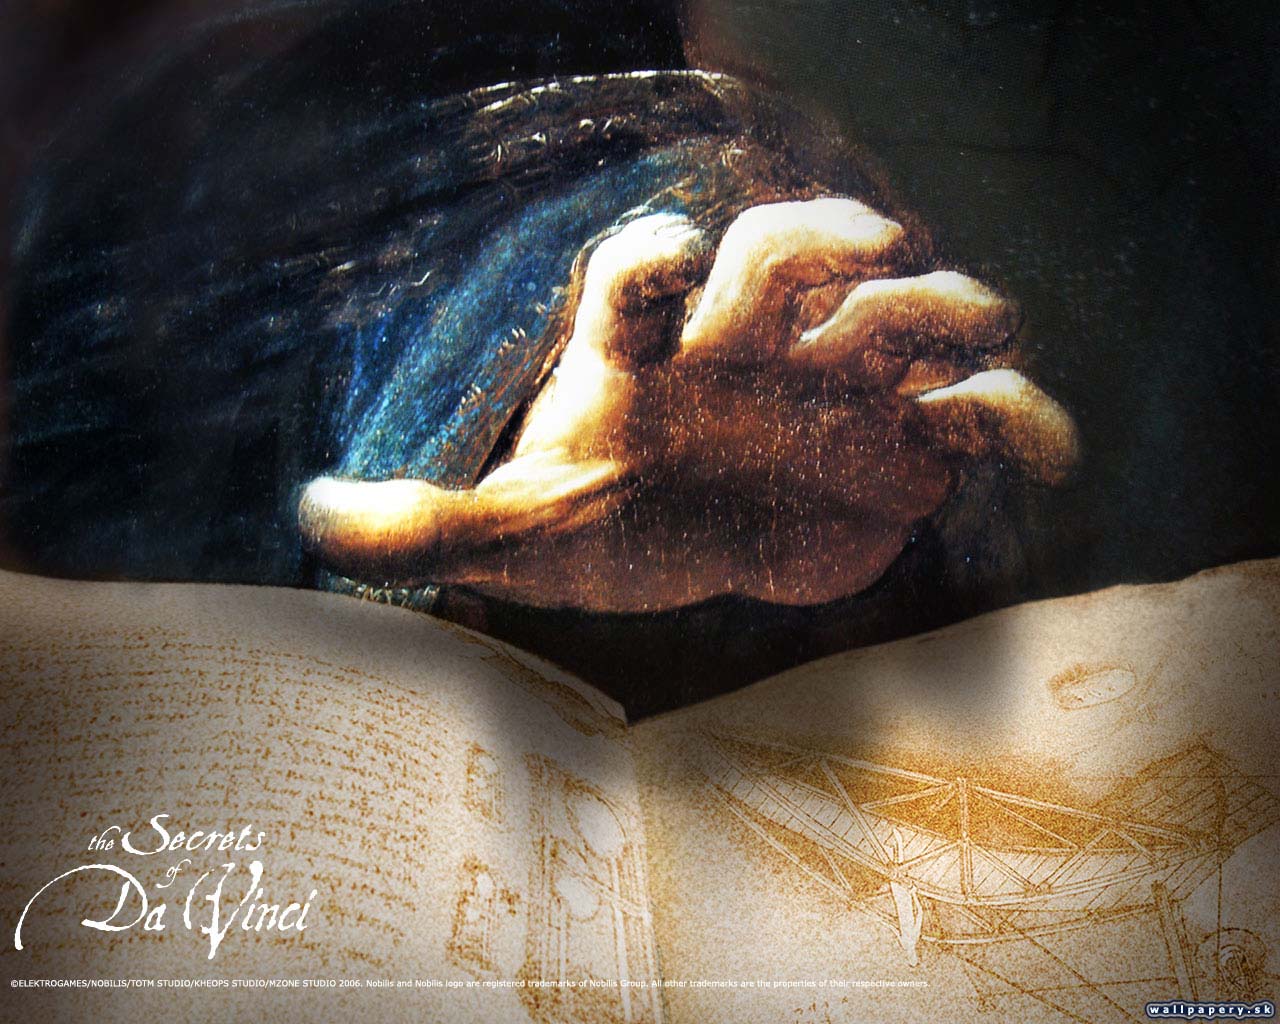 The Secrets of Da Vinci: the Forbidden Manuscript - wallpaper 3